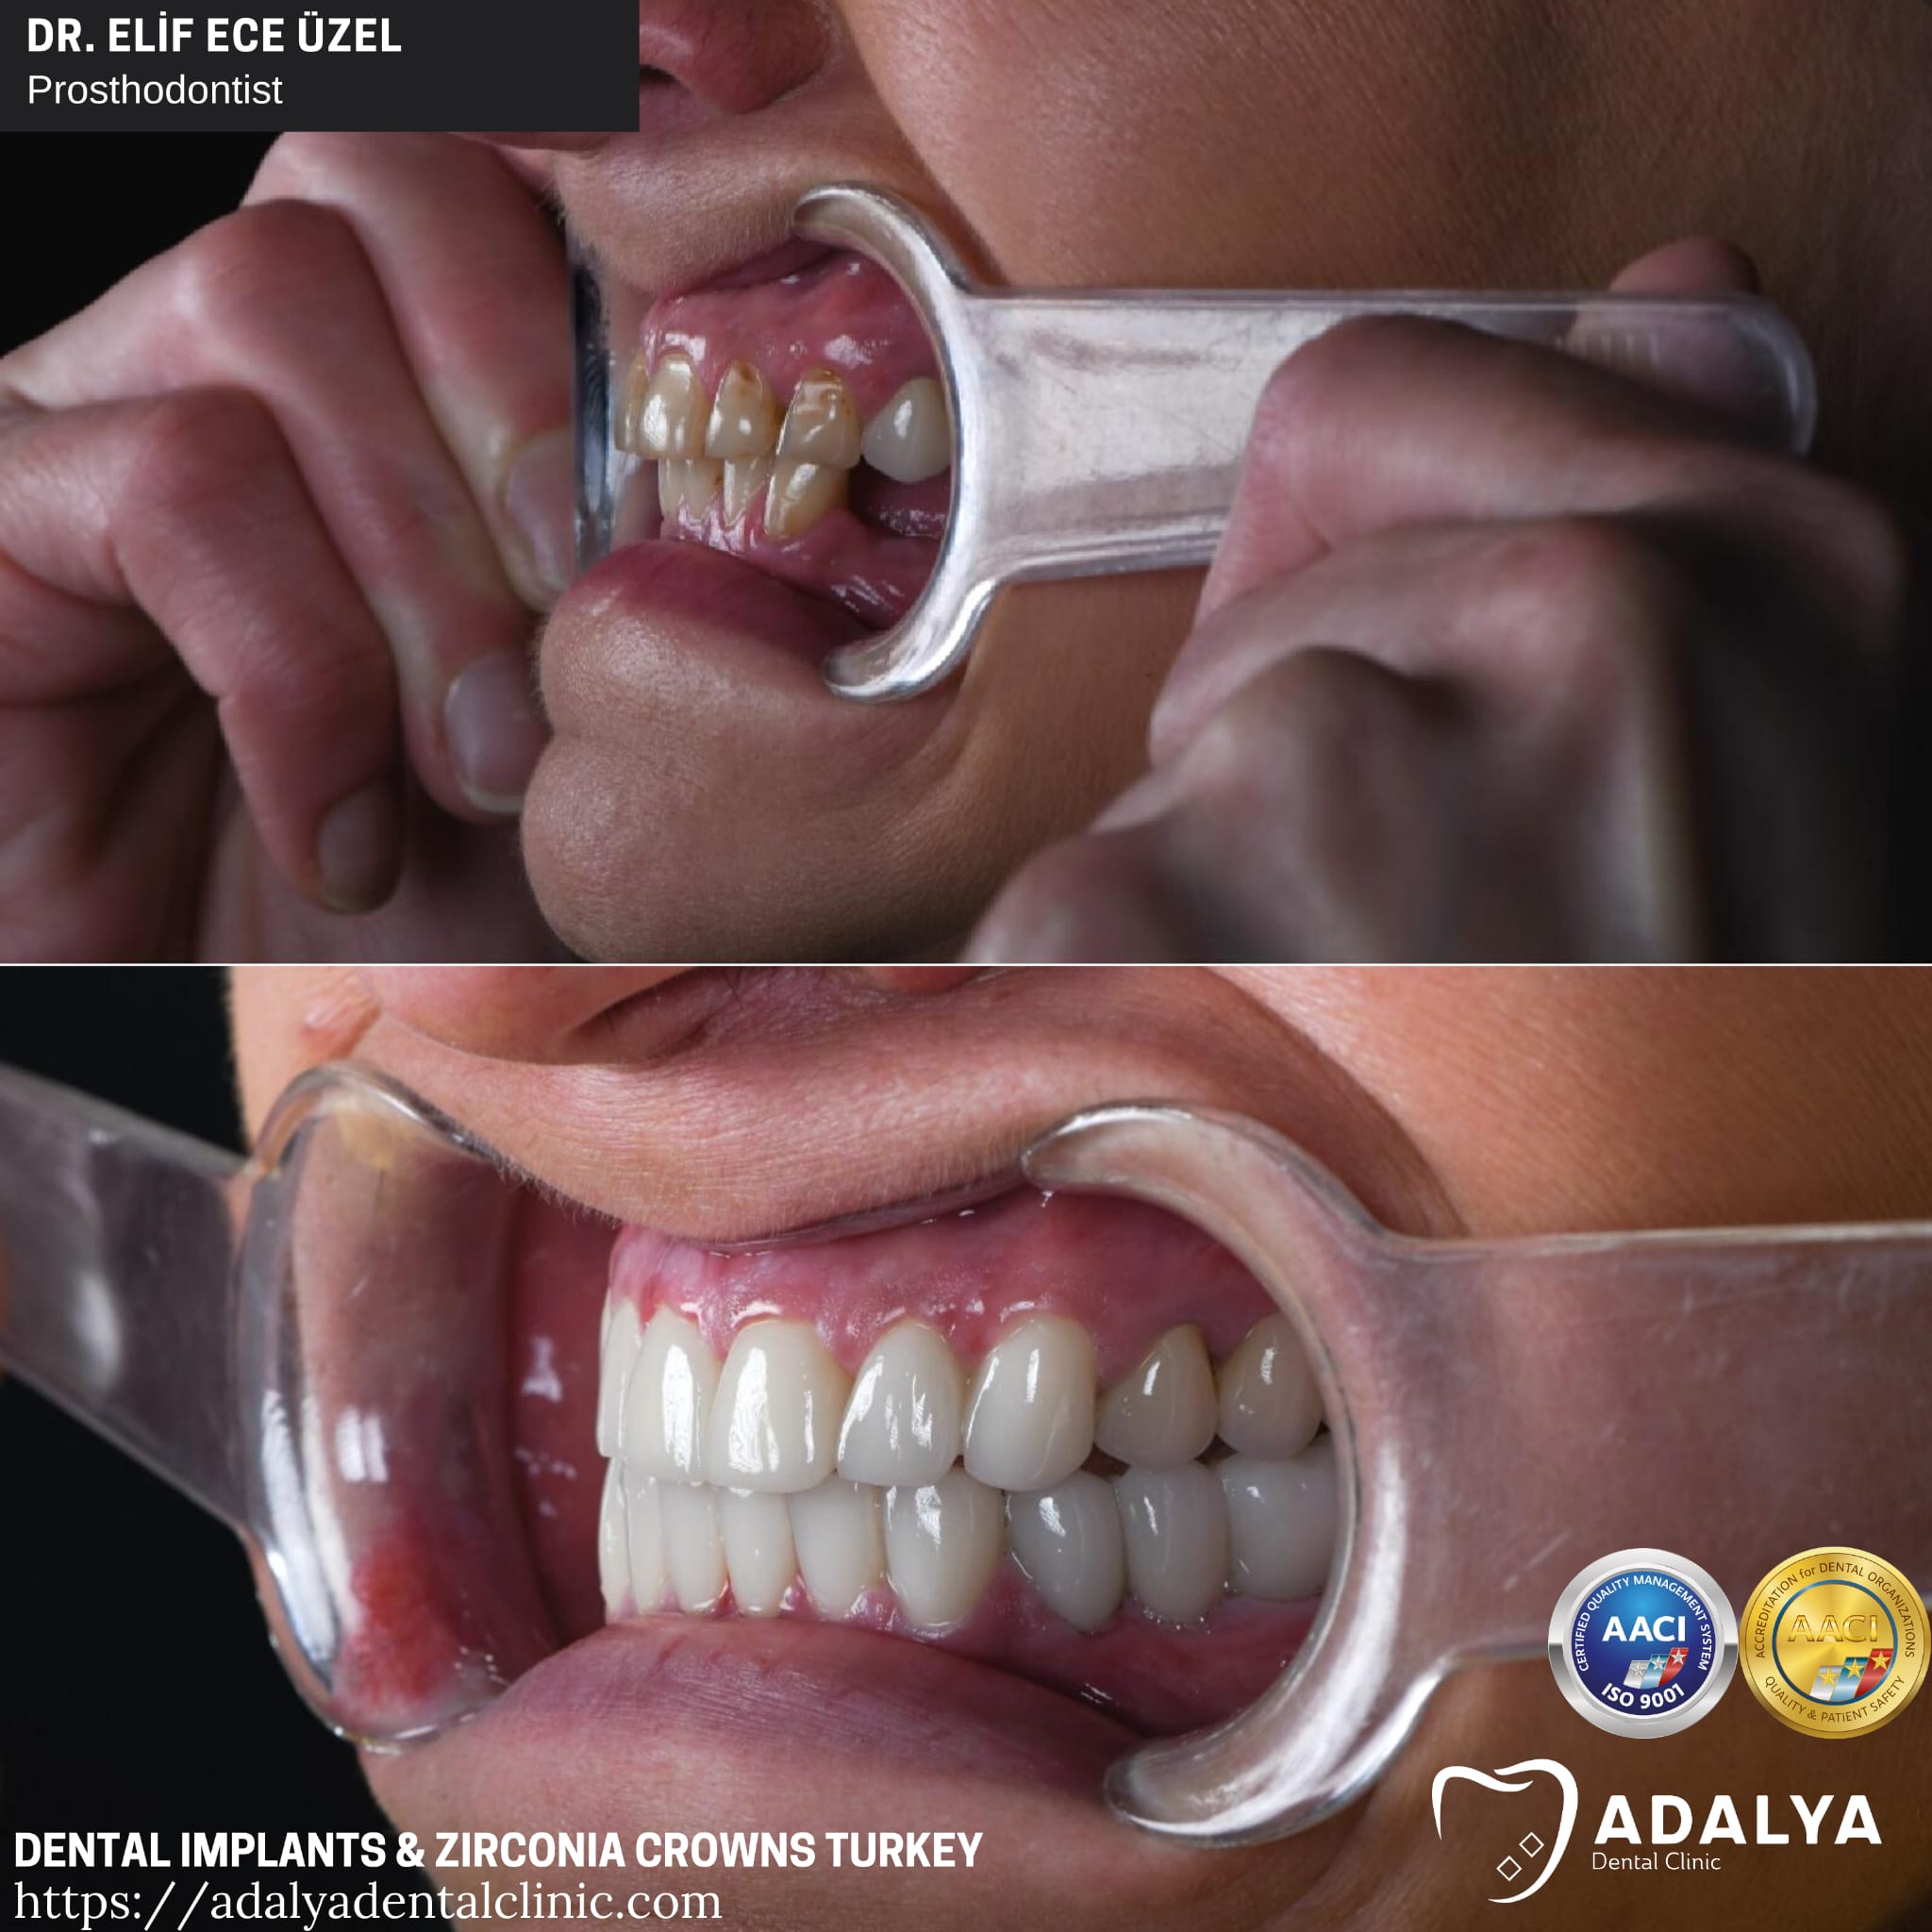 Zirkonkronen Furniere Truthahn Antalya Zahnimplantate Einstandspreise Pakete